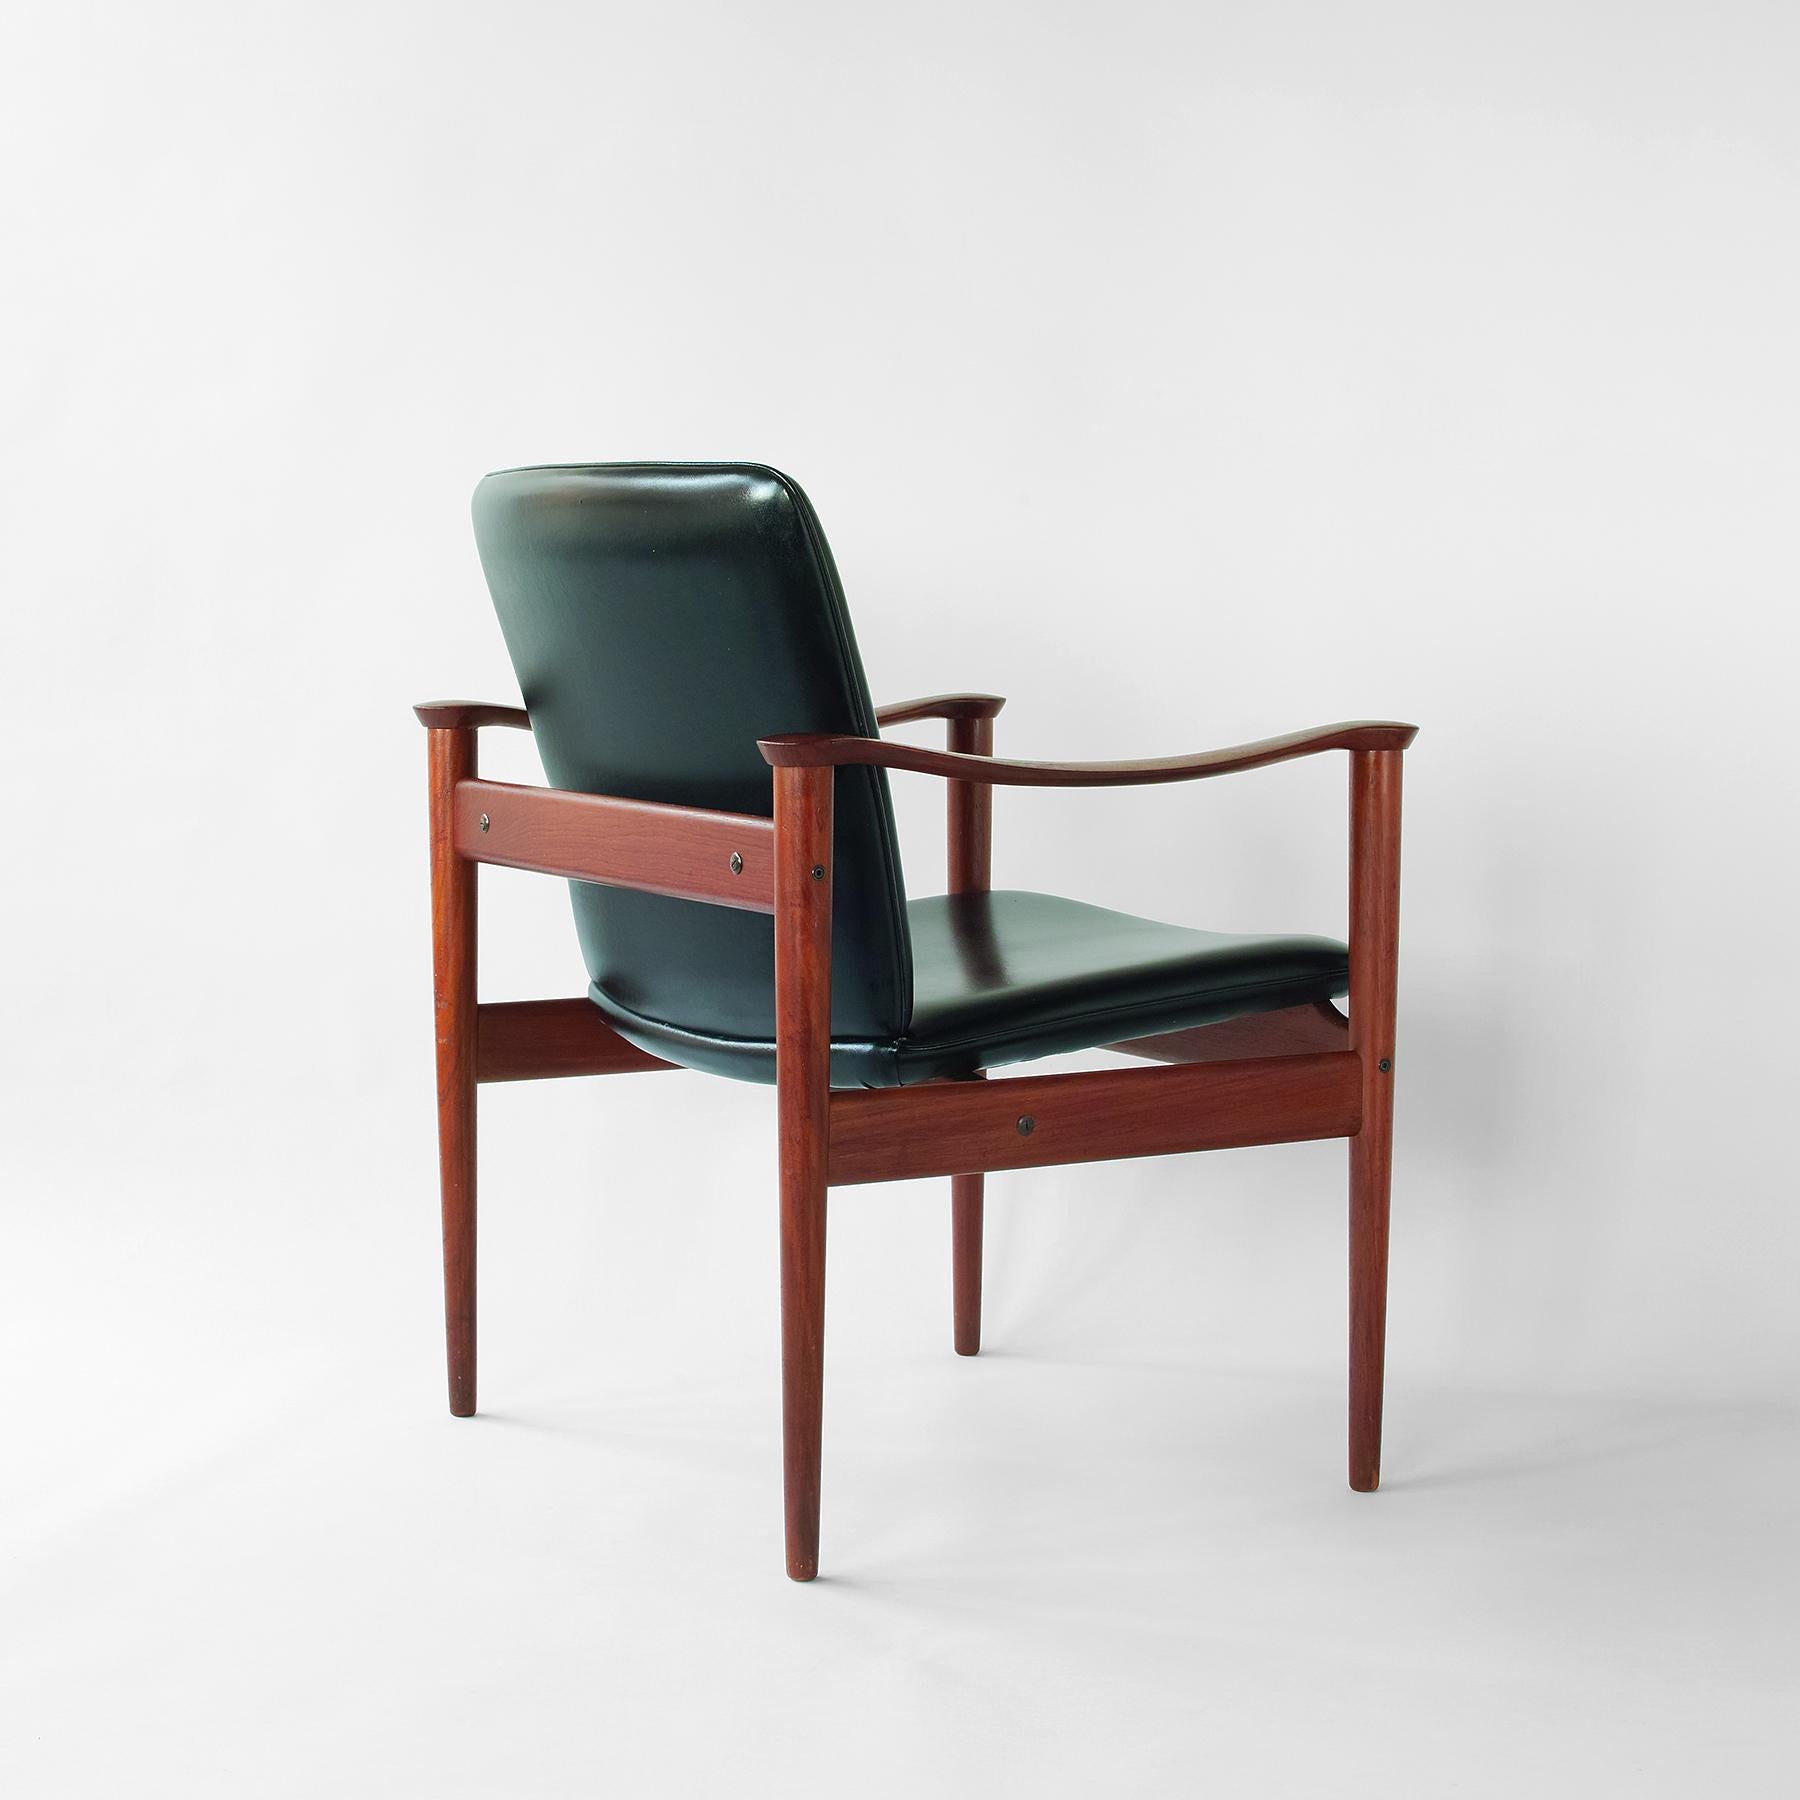 Wir bieten Ihnen diesen seltenen, nicht mehr produzierten Sessel Modell 710 an, der dem bekannteren Modell 711 von Fredrik Keyser ähnelt, aber eine aufrechtere Sitzposition aufweist. Dadurch eignet er sich als Klimmzugstuhl, ist aber auch bequem und